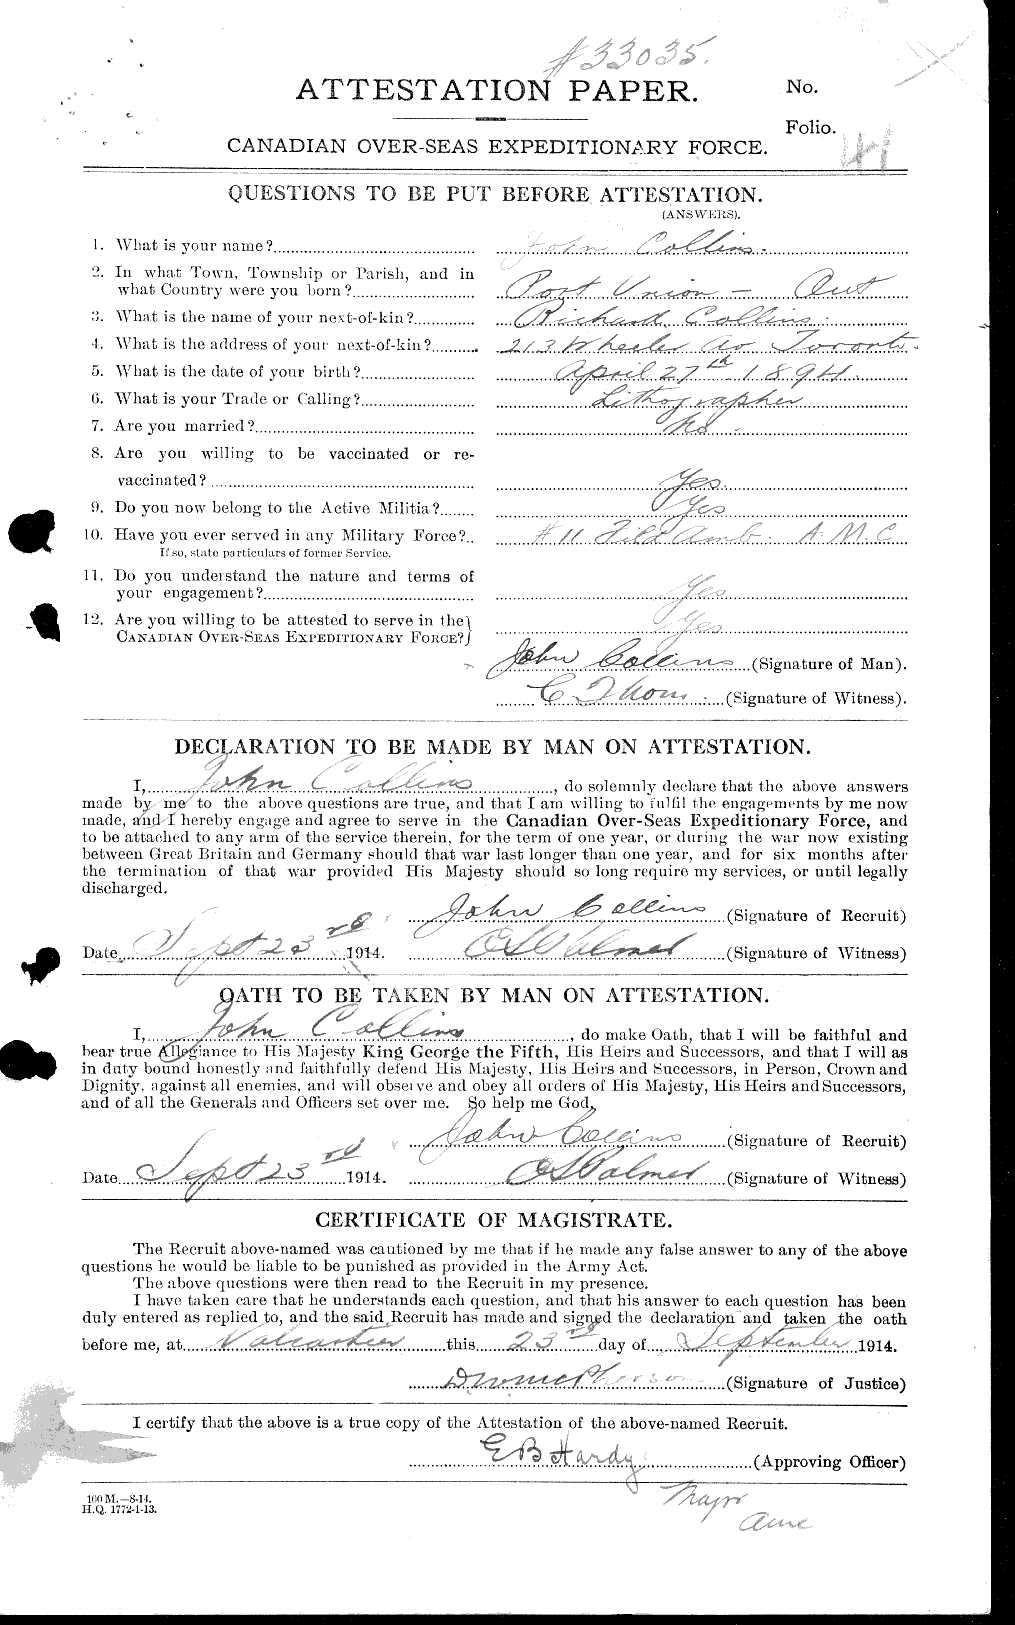 Dossiers du Personnel de la Première Guerre mondiale - CEC 037968a